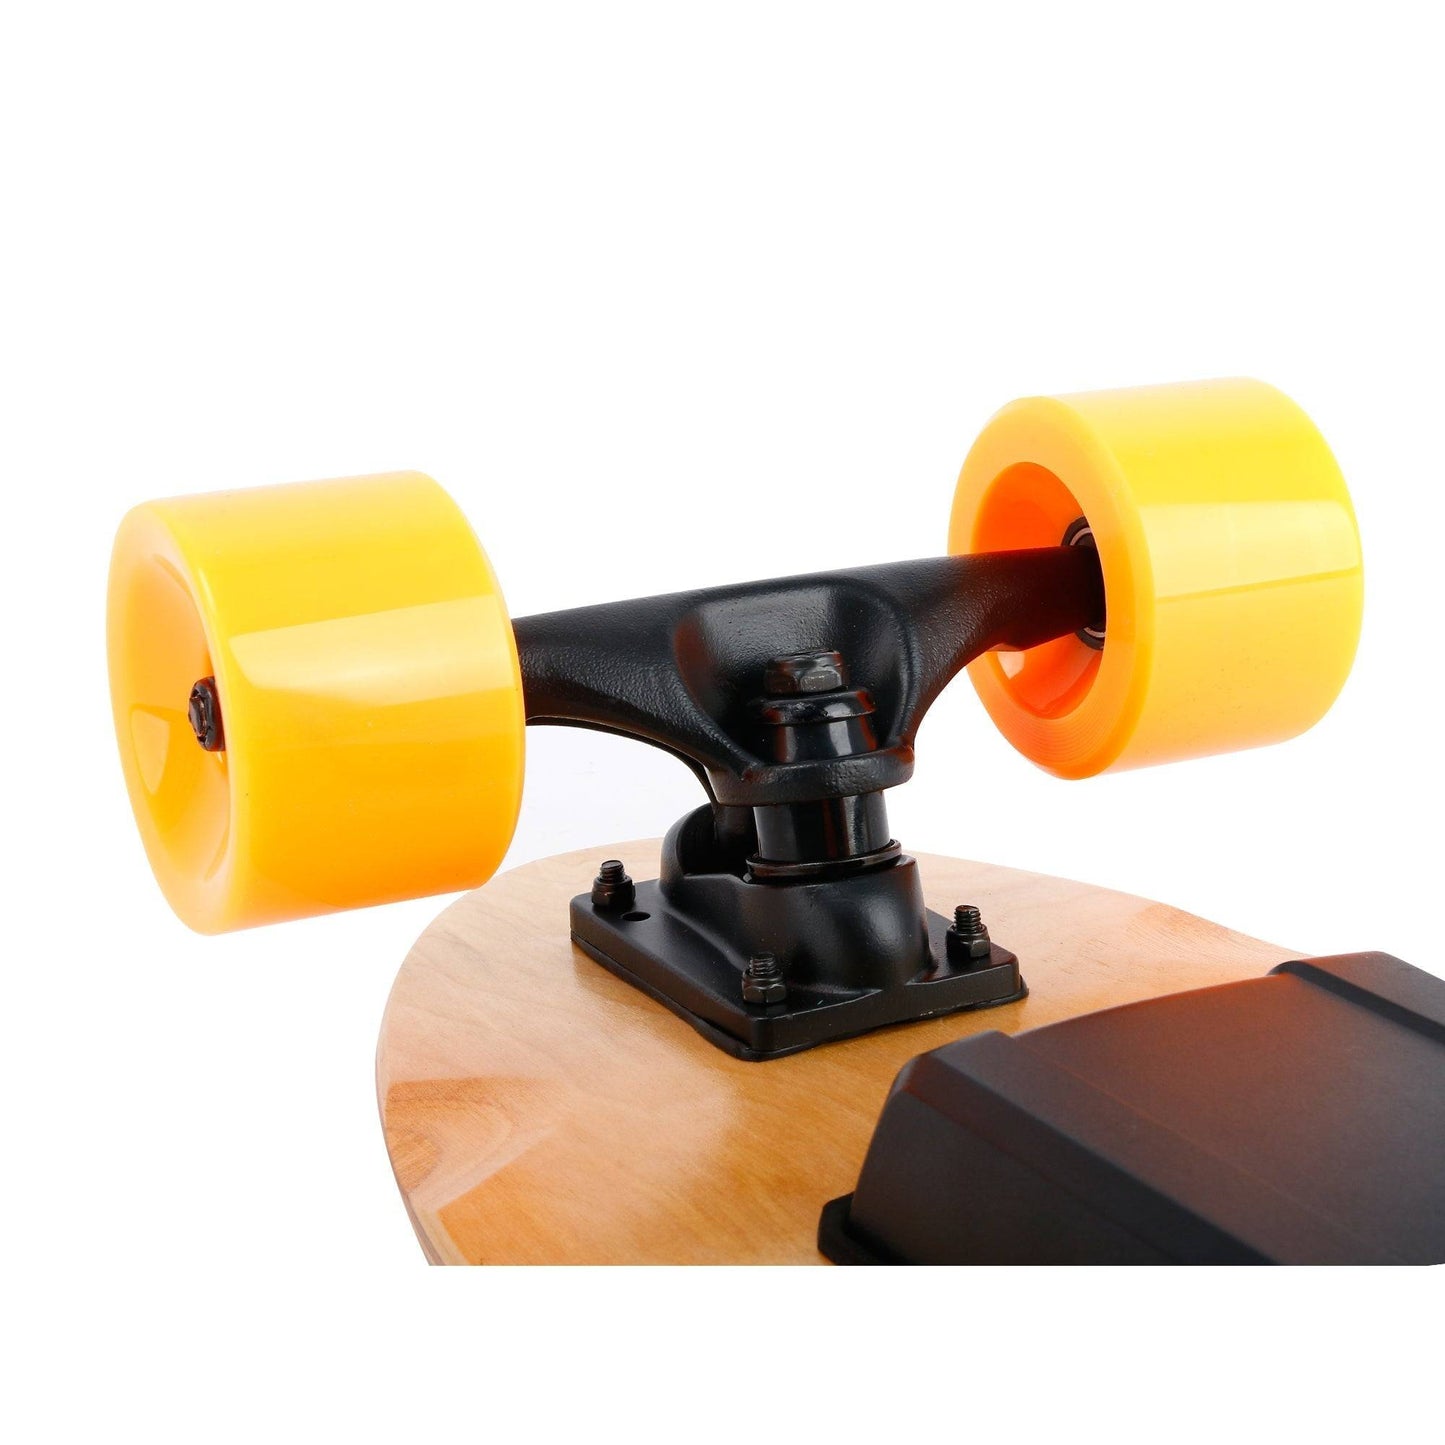 Small Electric Skateboard with Remote Control, 350W, Max 10 MPH, 7 Layers Maple E-Skateboard